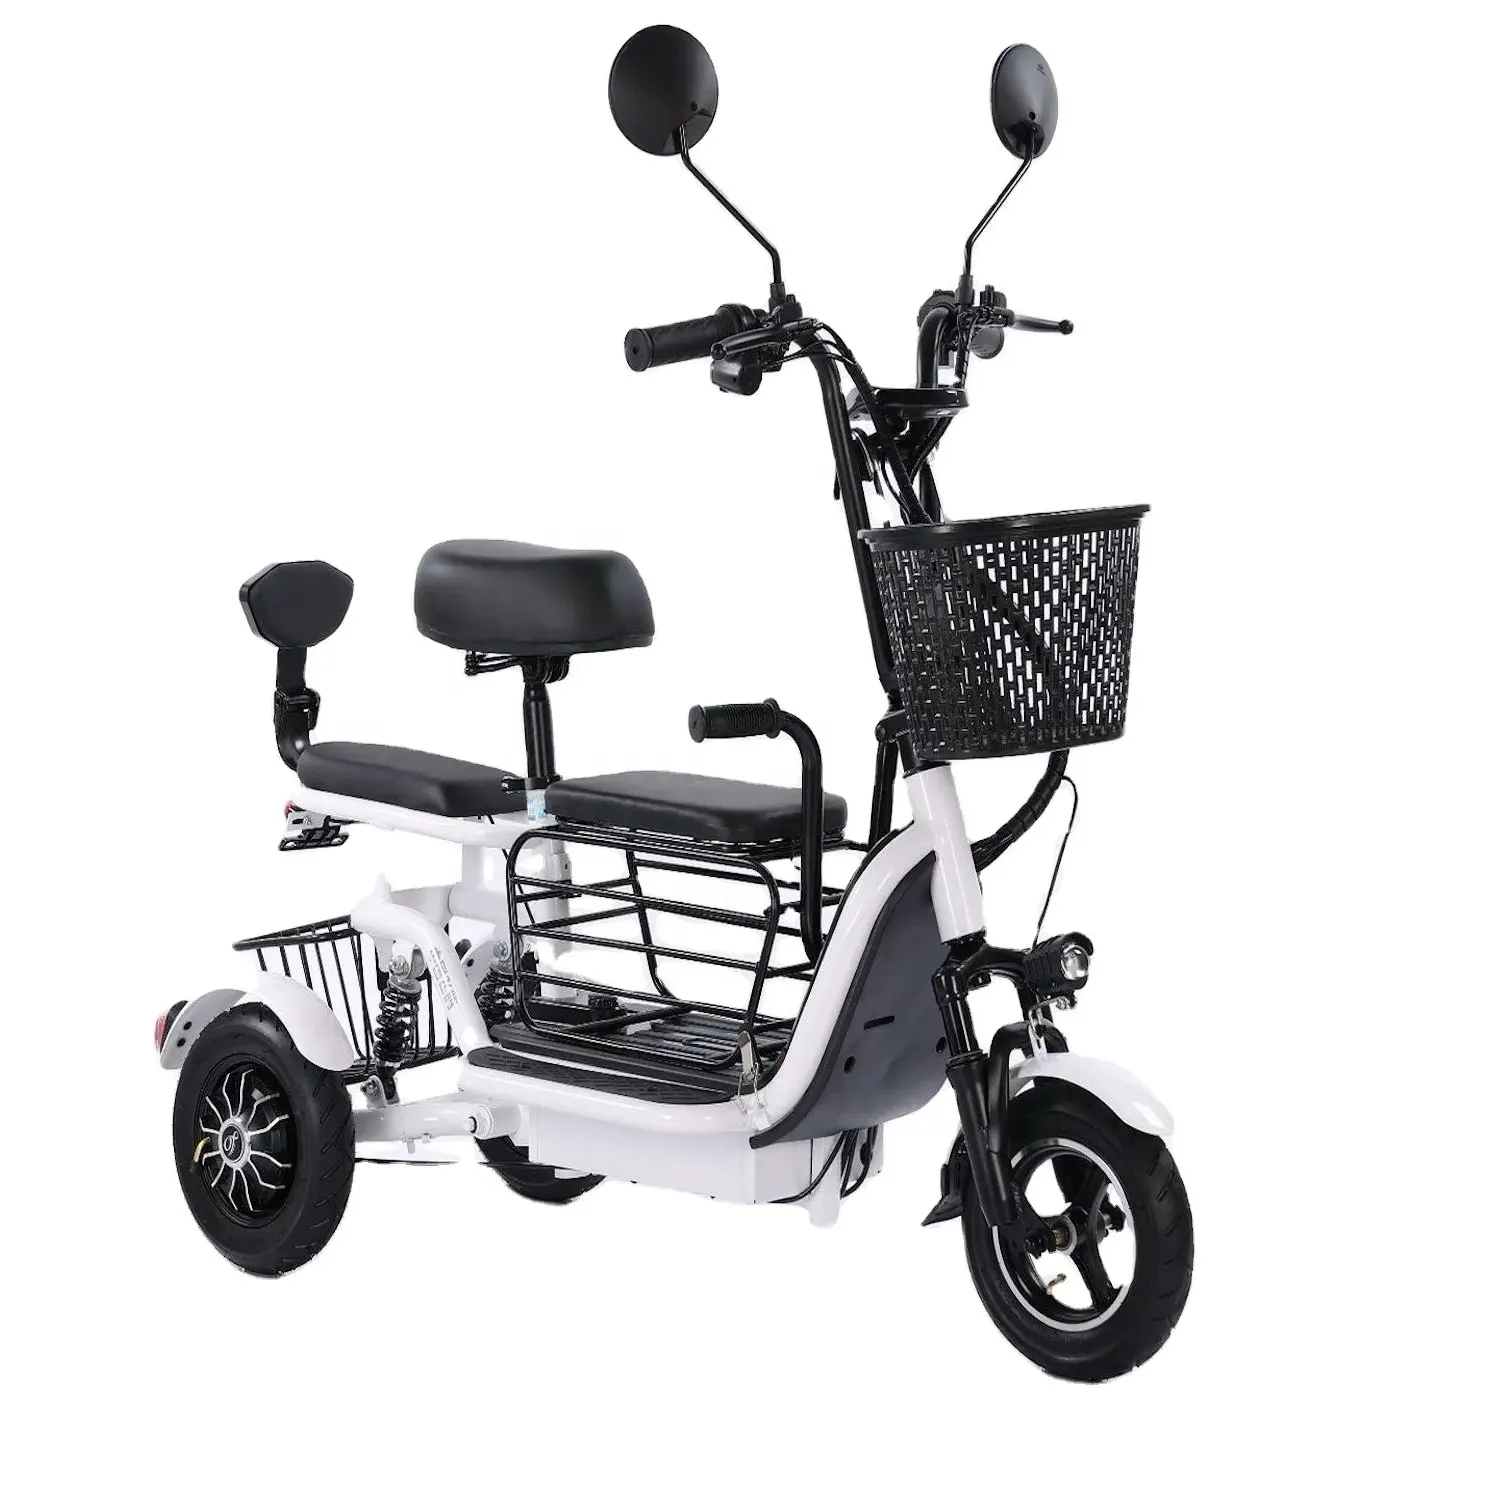 10 pollici vendite dirette di fabbrica batteria al litio pieghevole triciclo elettrico piccolo scooter leggero trikes elettrico